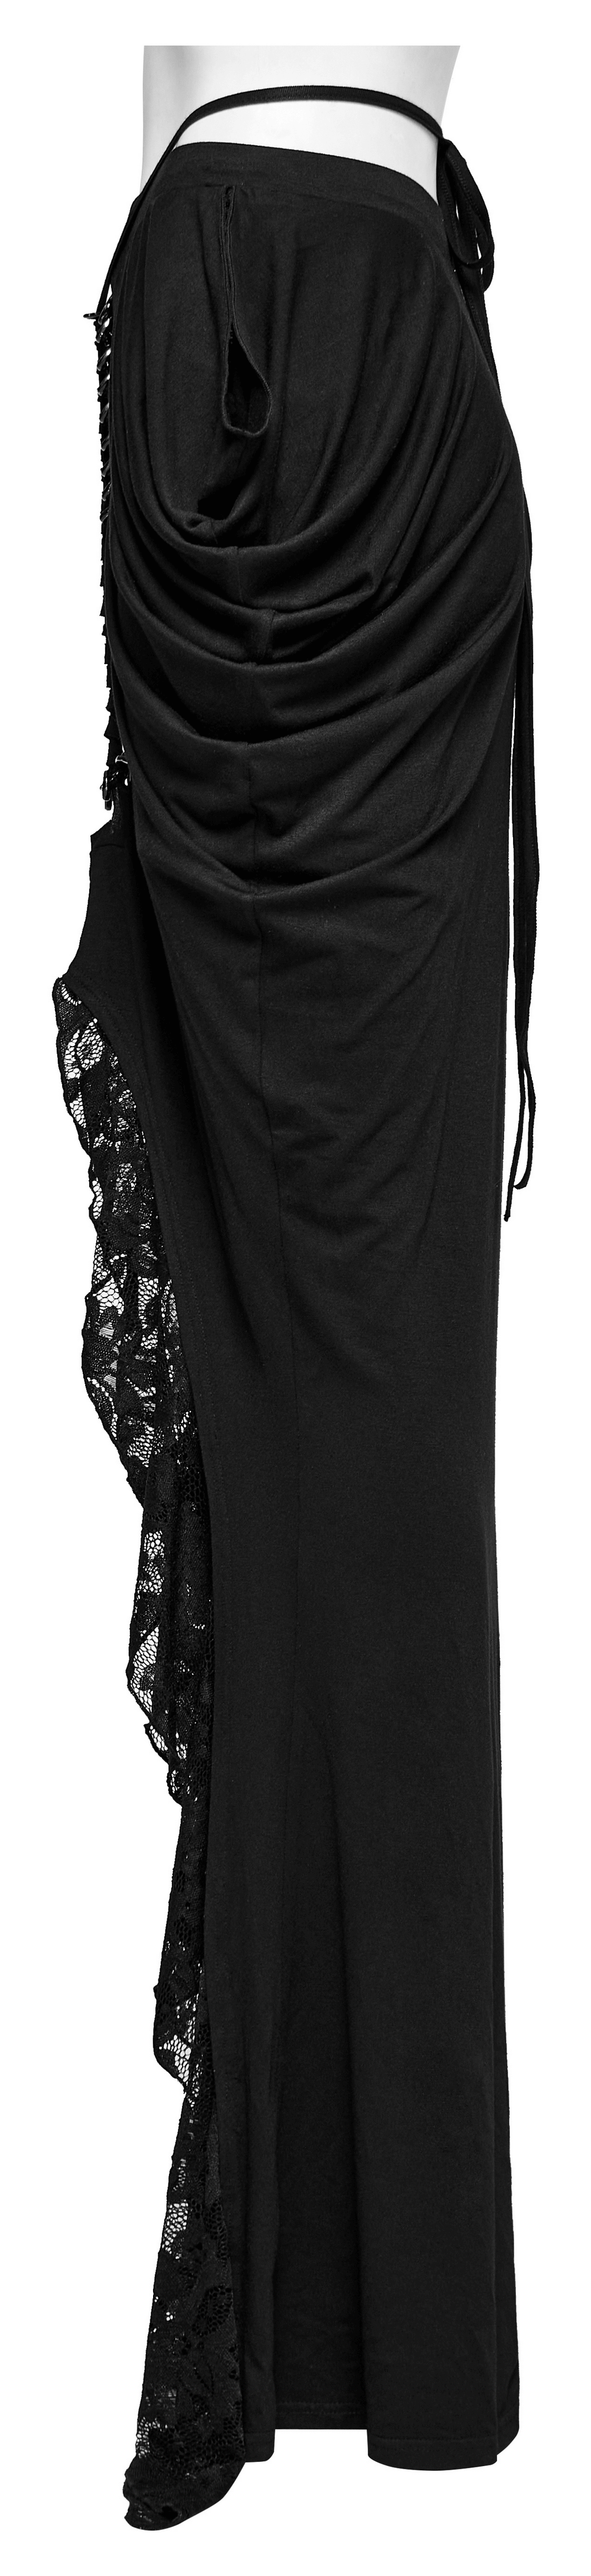 Elegante falda gótica decorada con encaje y cadena